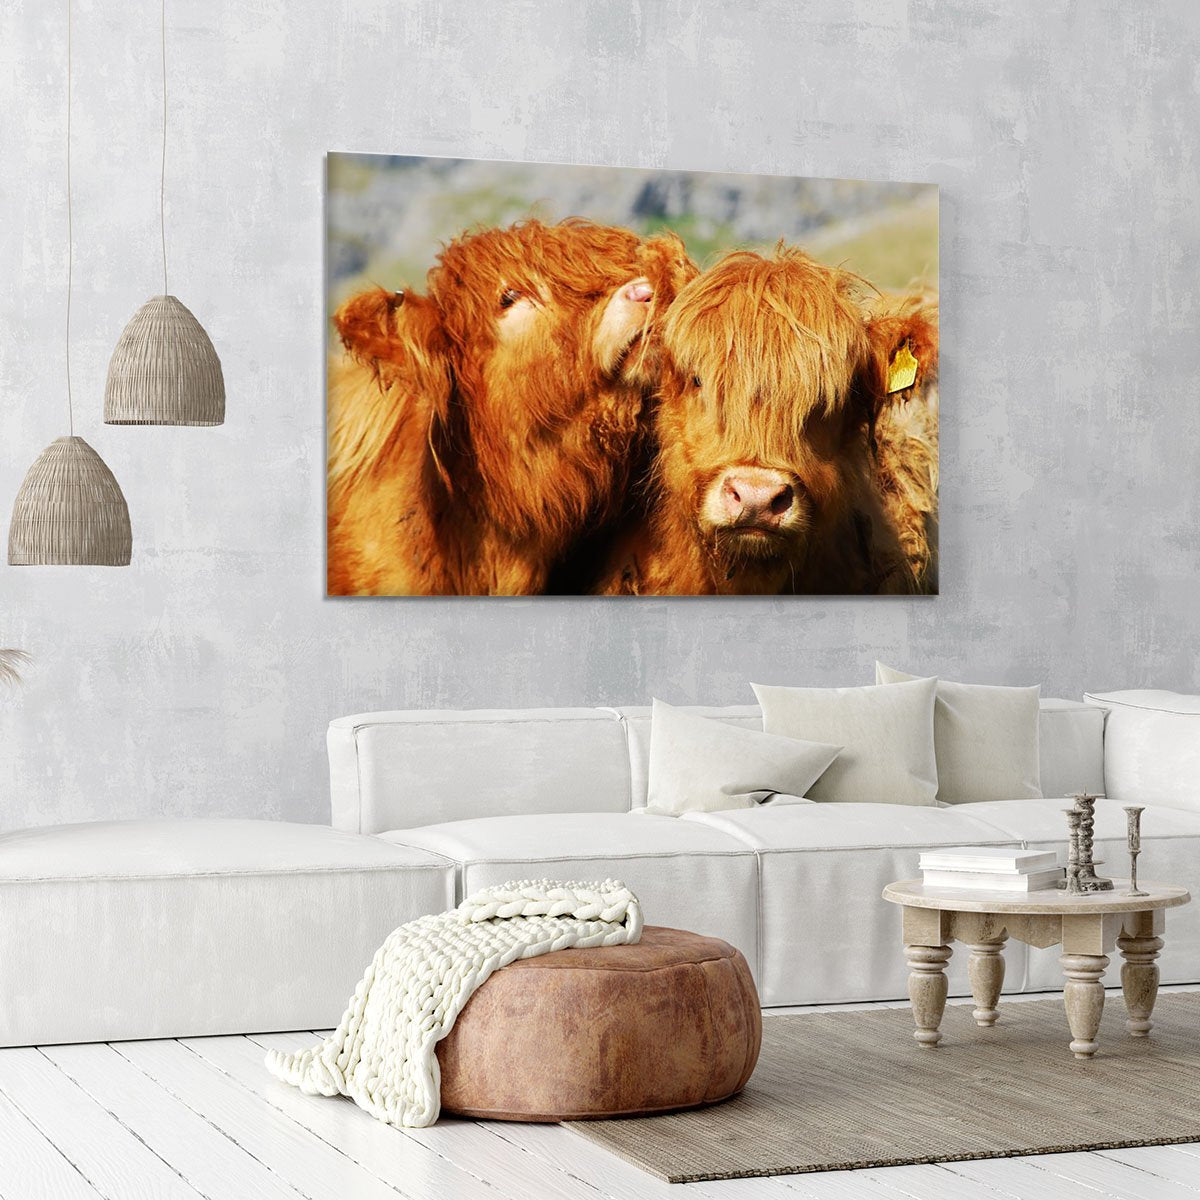 Farm cows Canvas Print or Poster